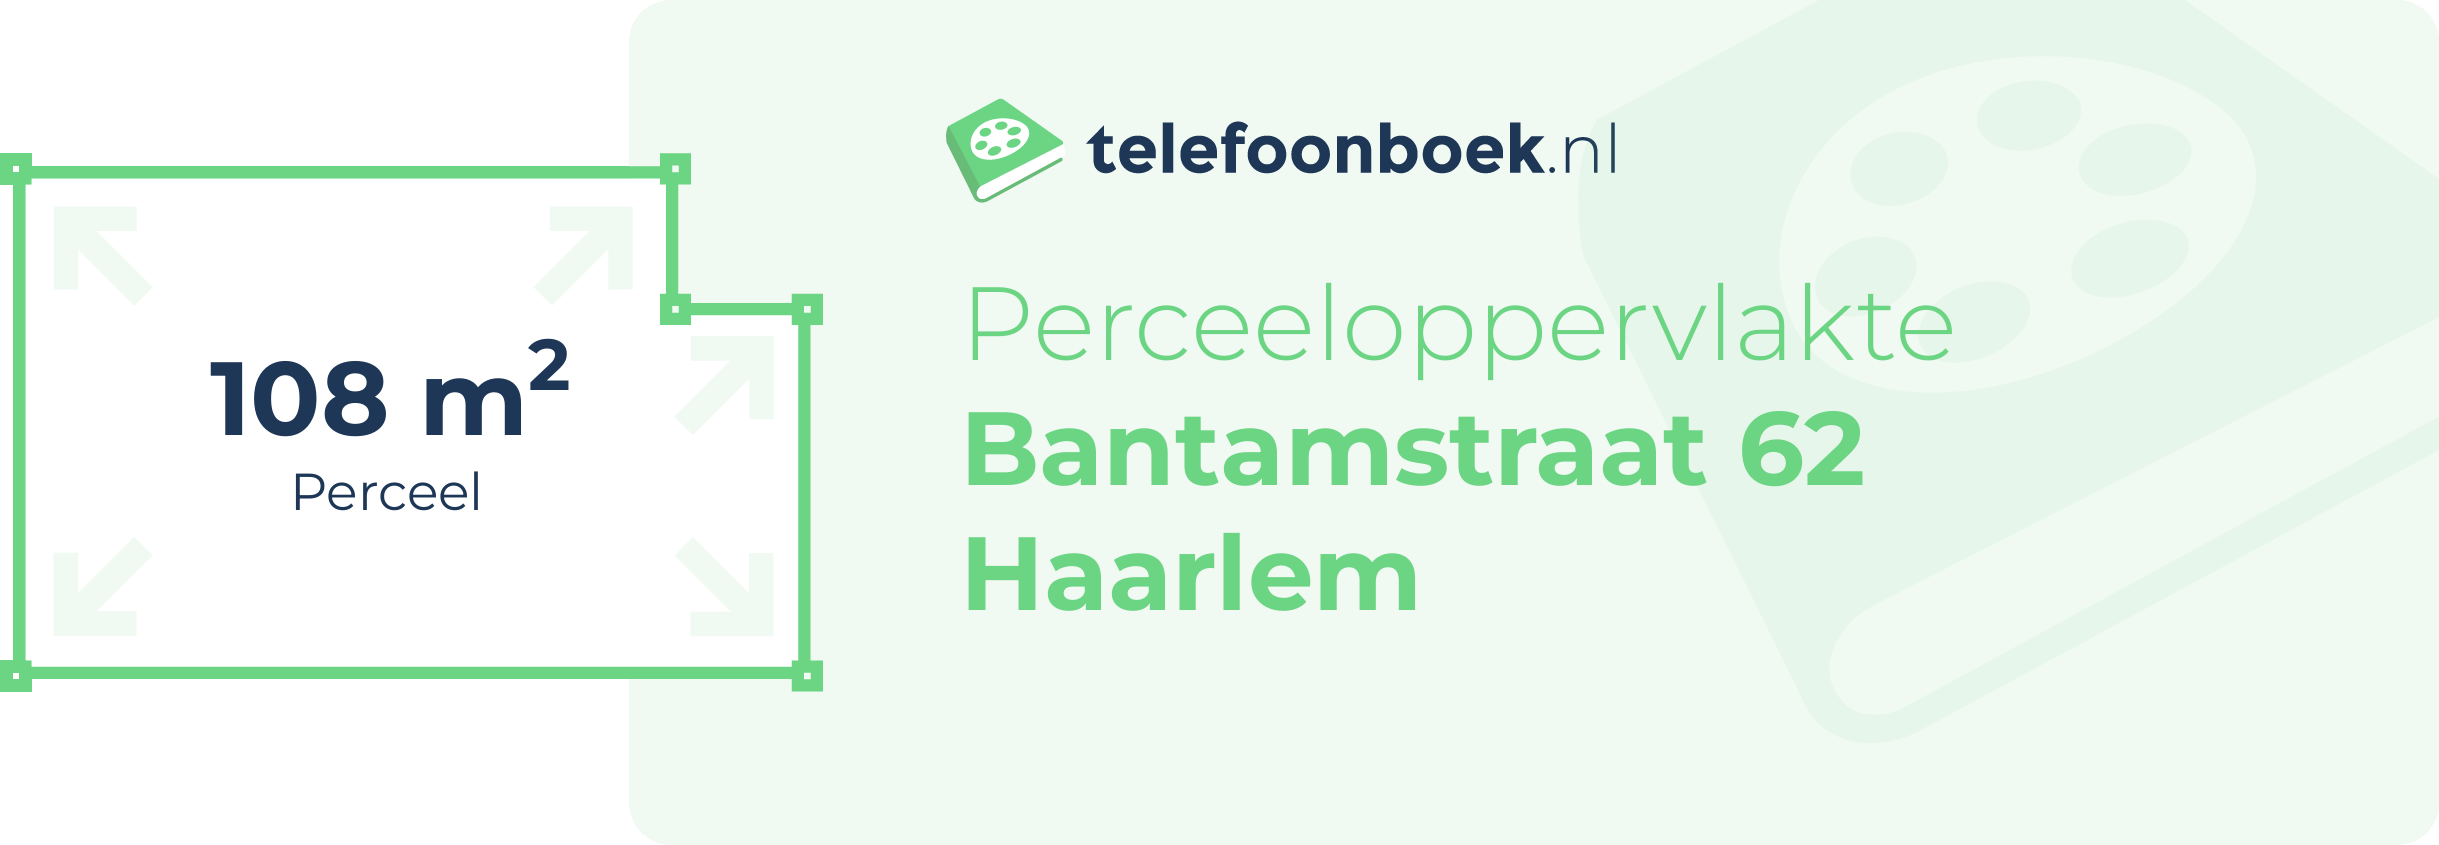 Perceeloppervlakte Bantamstraat 62 Haarlem